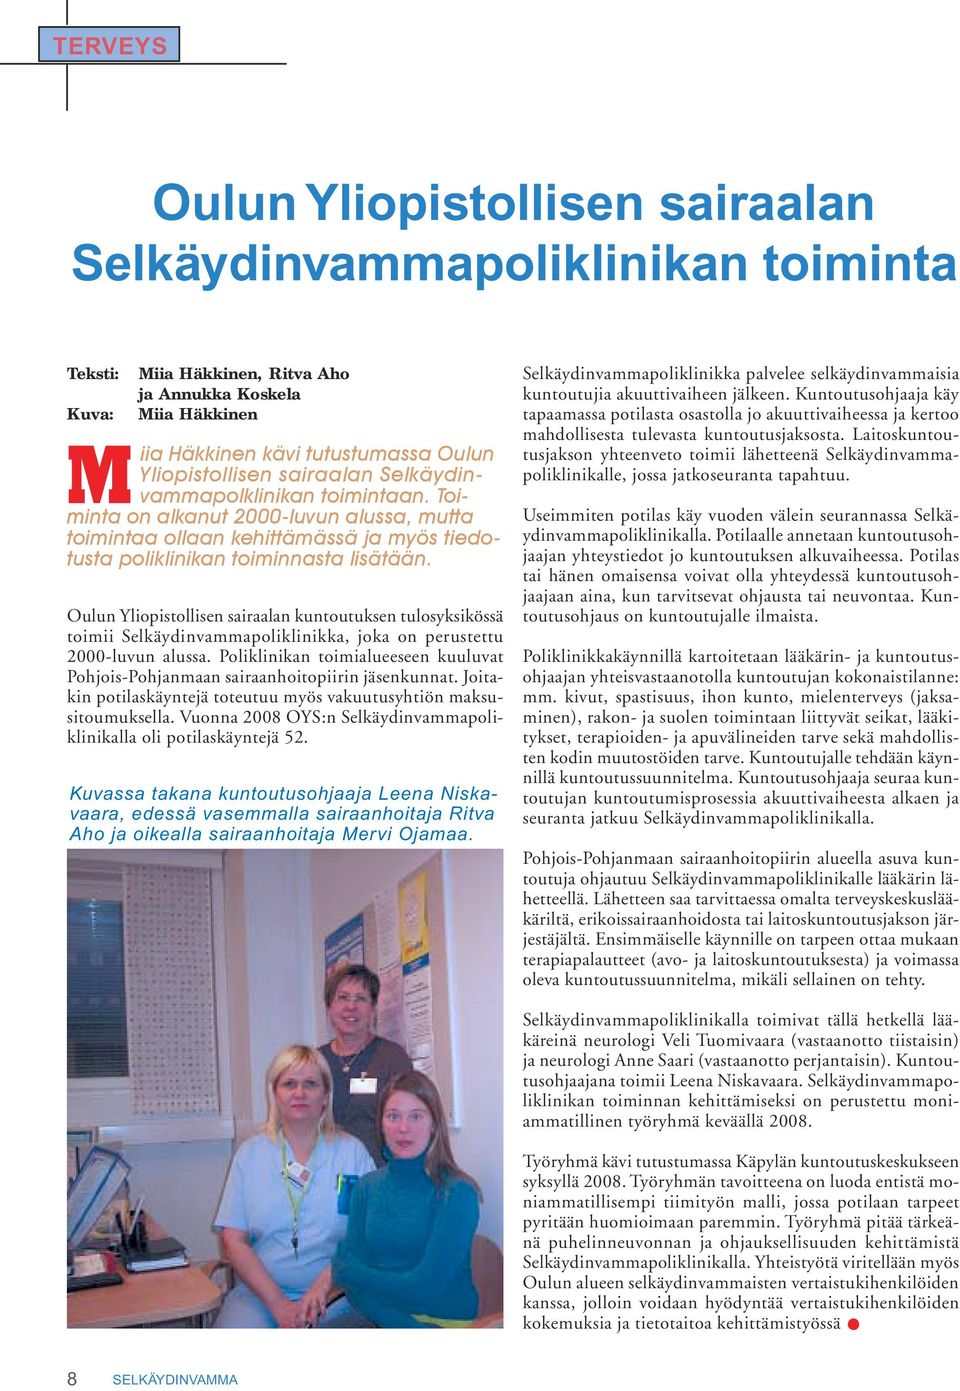 Oulun Yliopistollisen sairaalan kuntoutuksen tulosyksikössä toimii Selkäydinvammapoliklinikka, joka on perustettu 2000-luvun alussa.